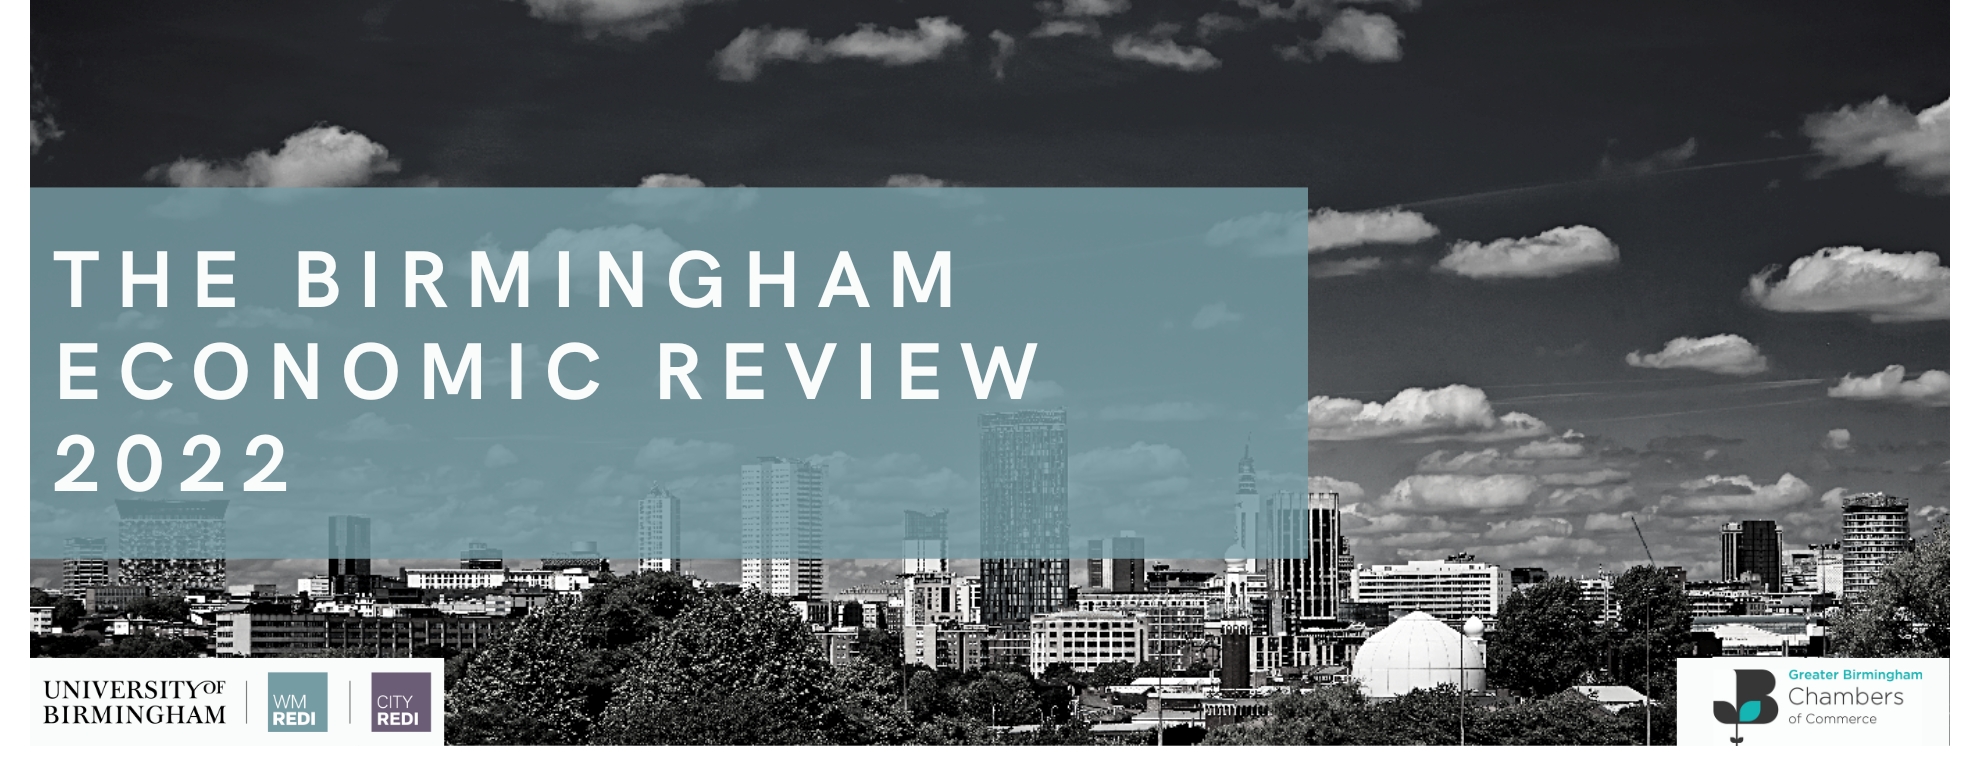 The Birmingham Economic Review 2022